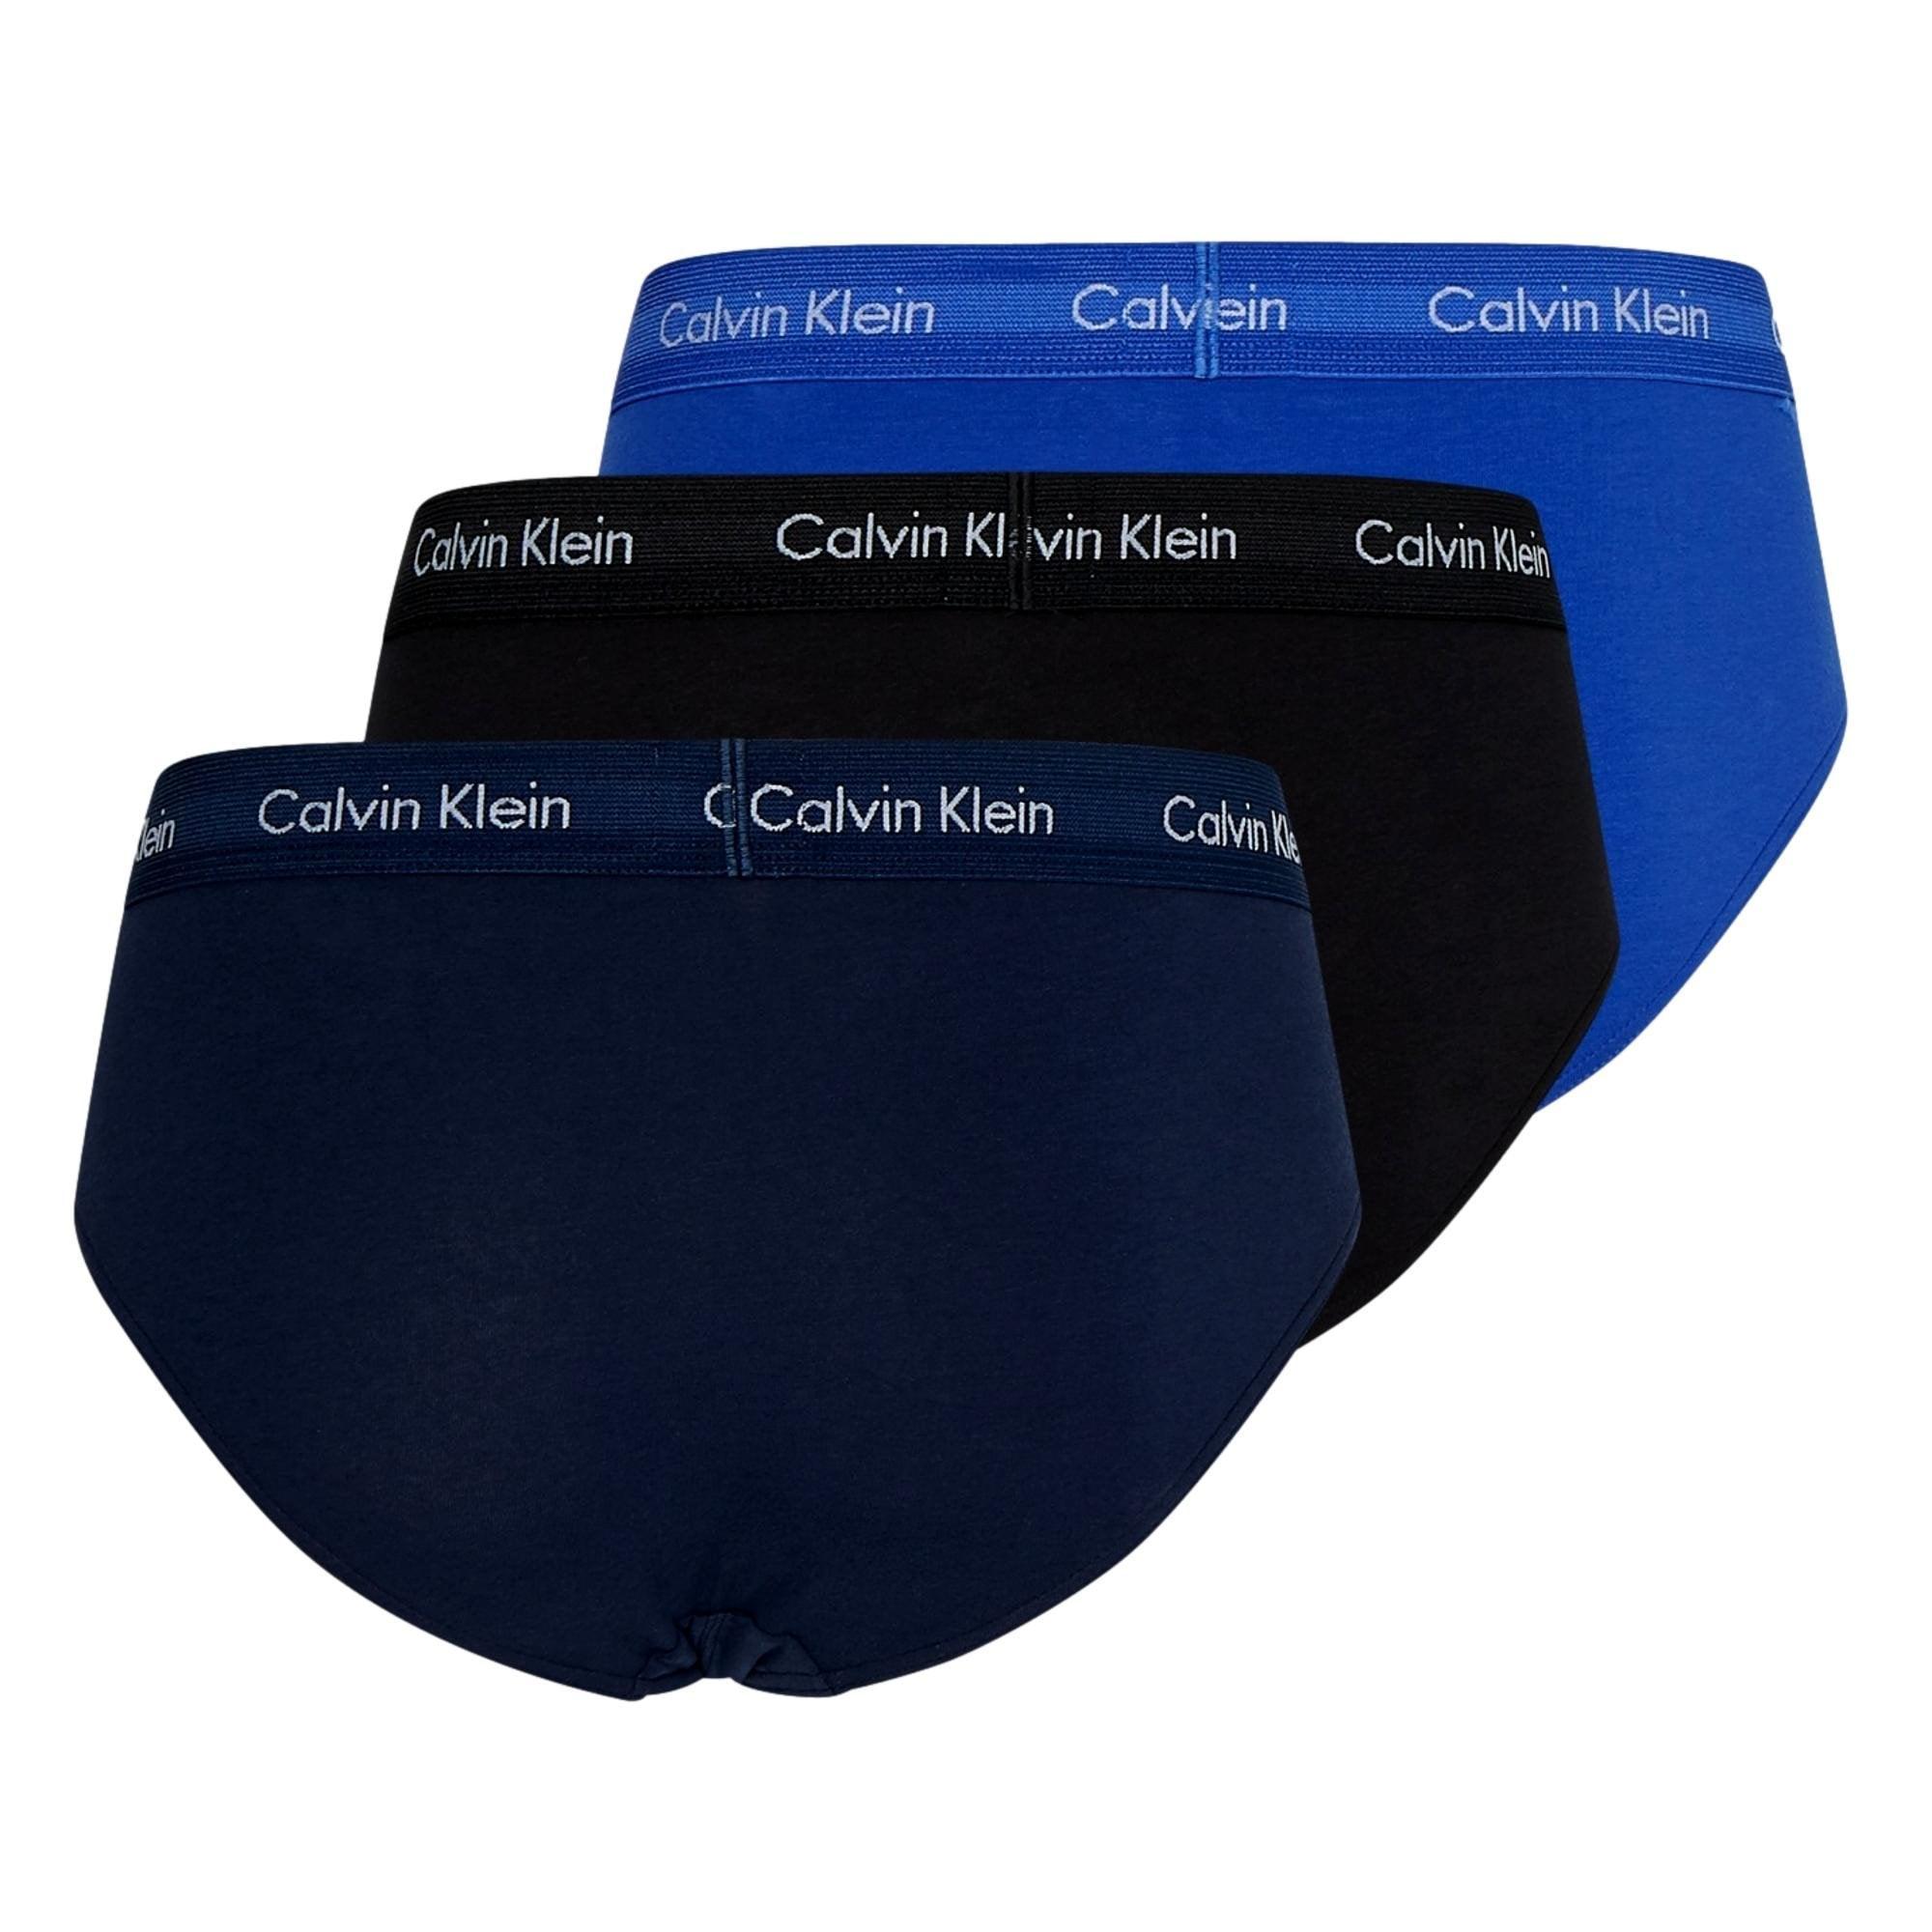 Calvin Klein 3 Pack Cotton Stretch Brief - Black/Blue/Navy